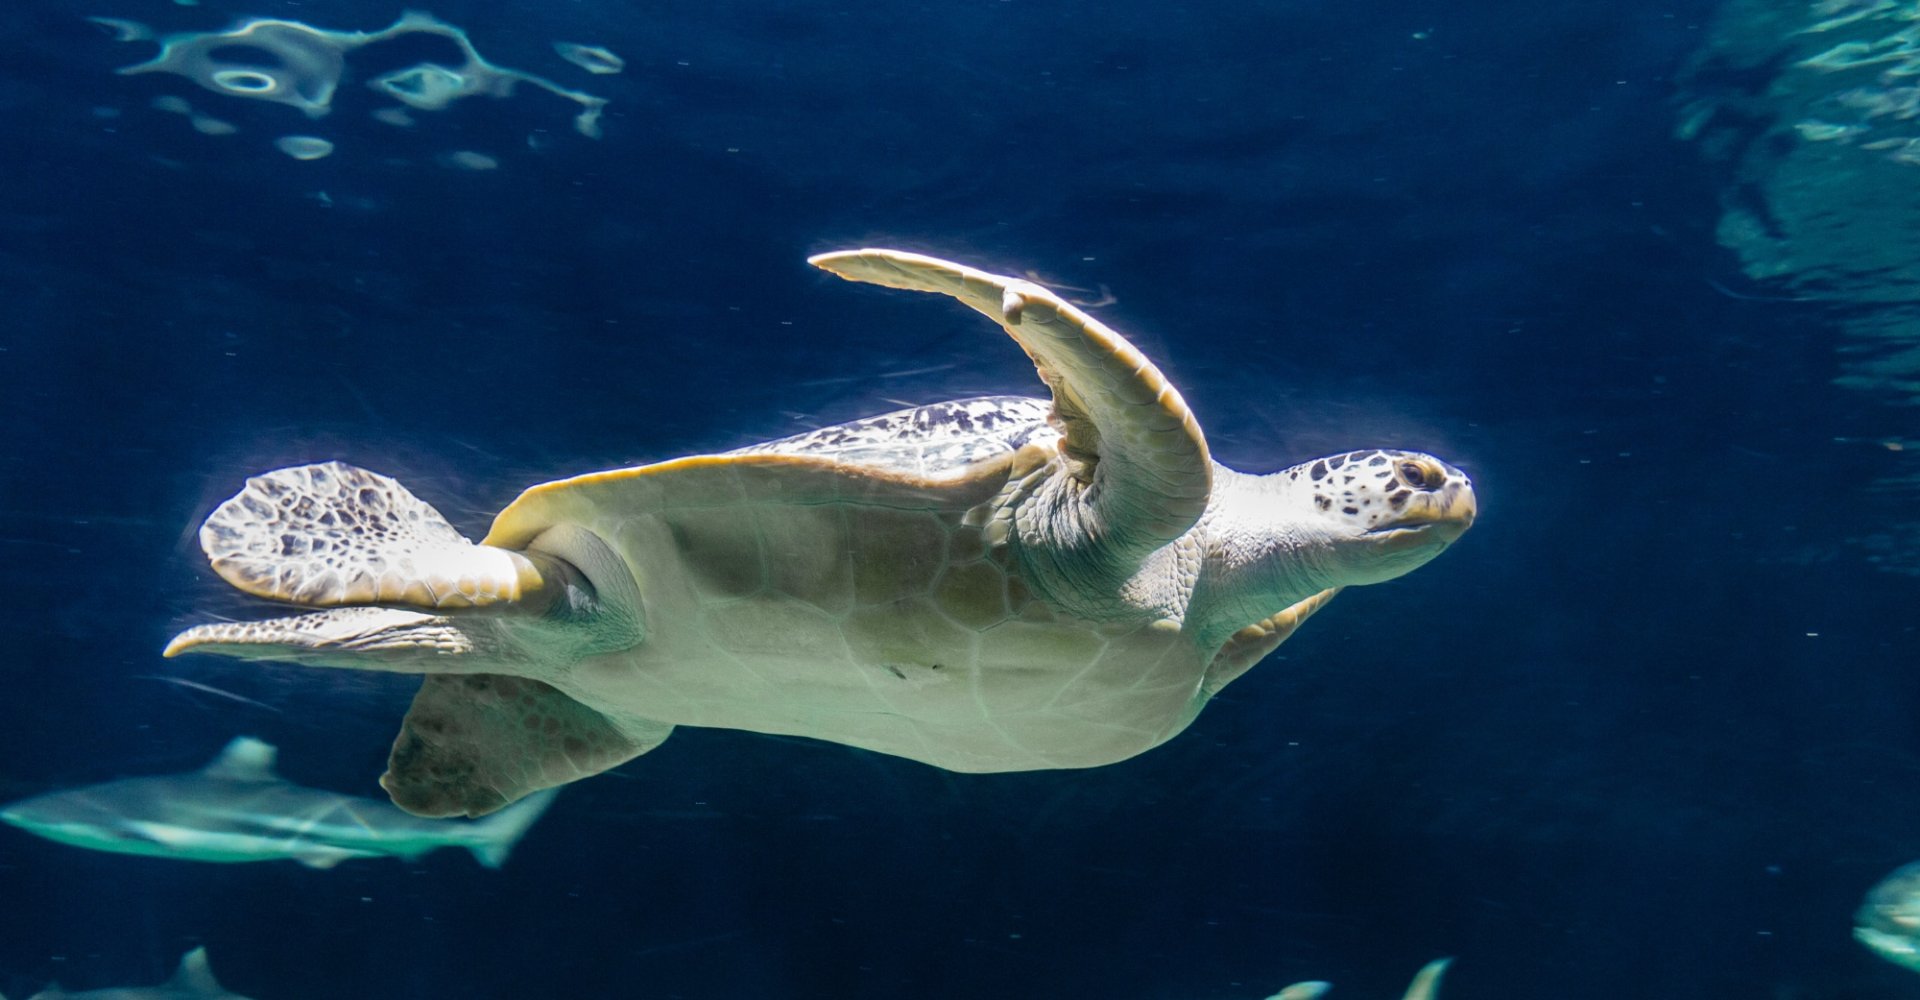 The turtles of the Aquarium in Livorno